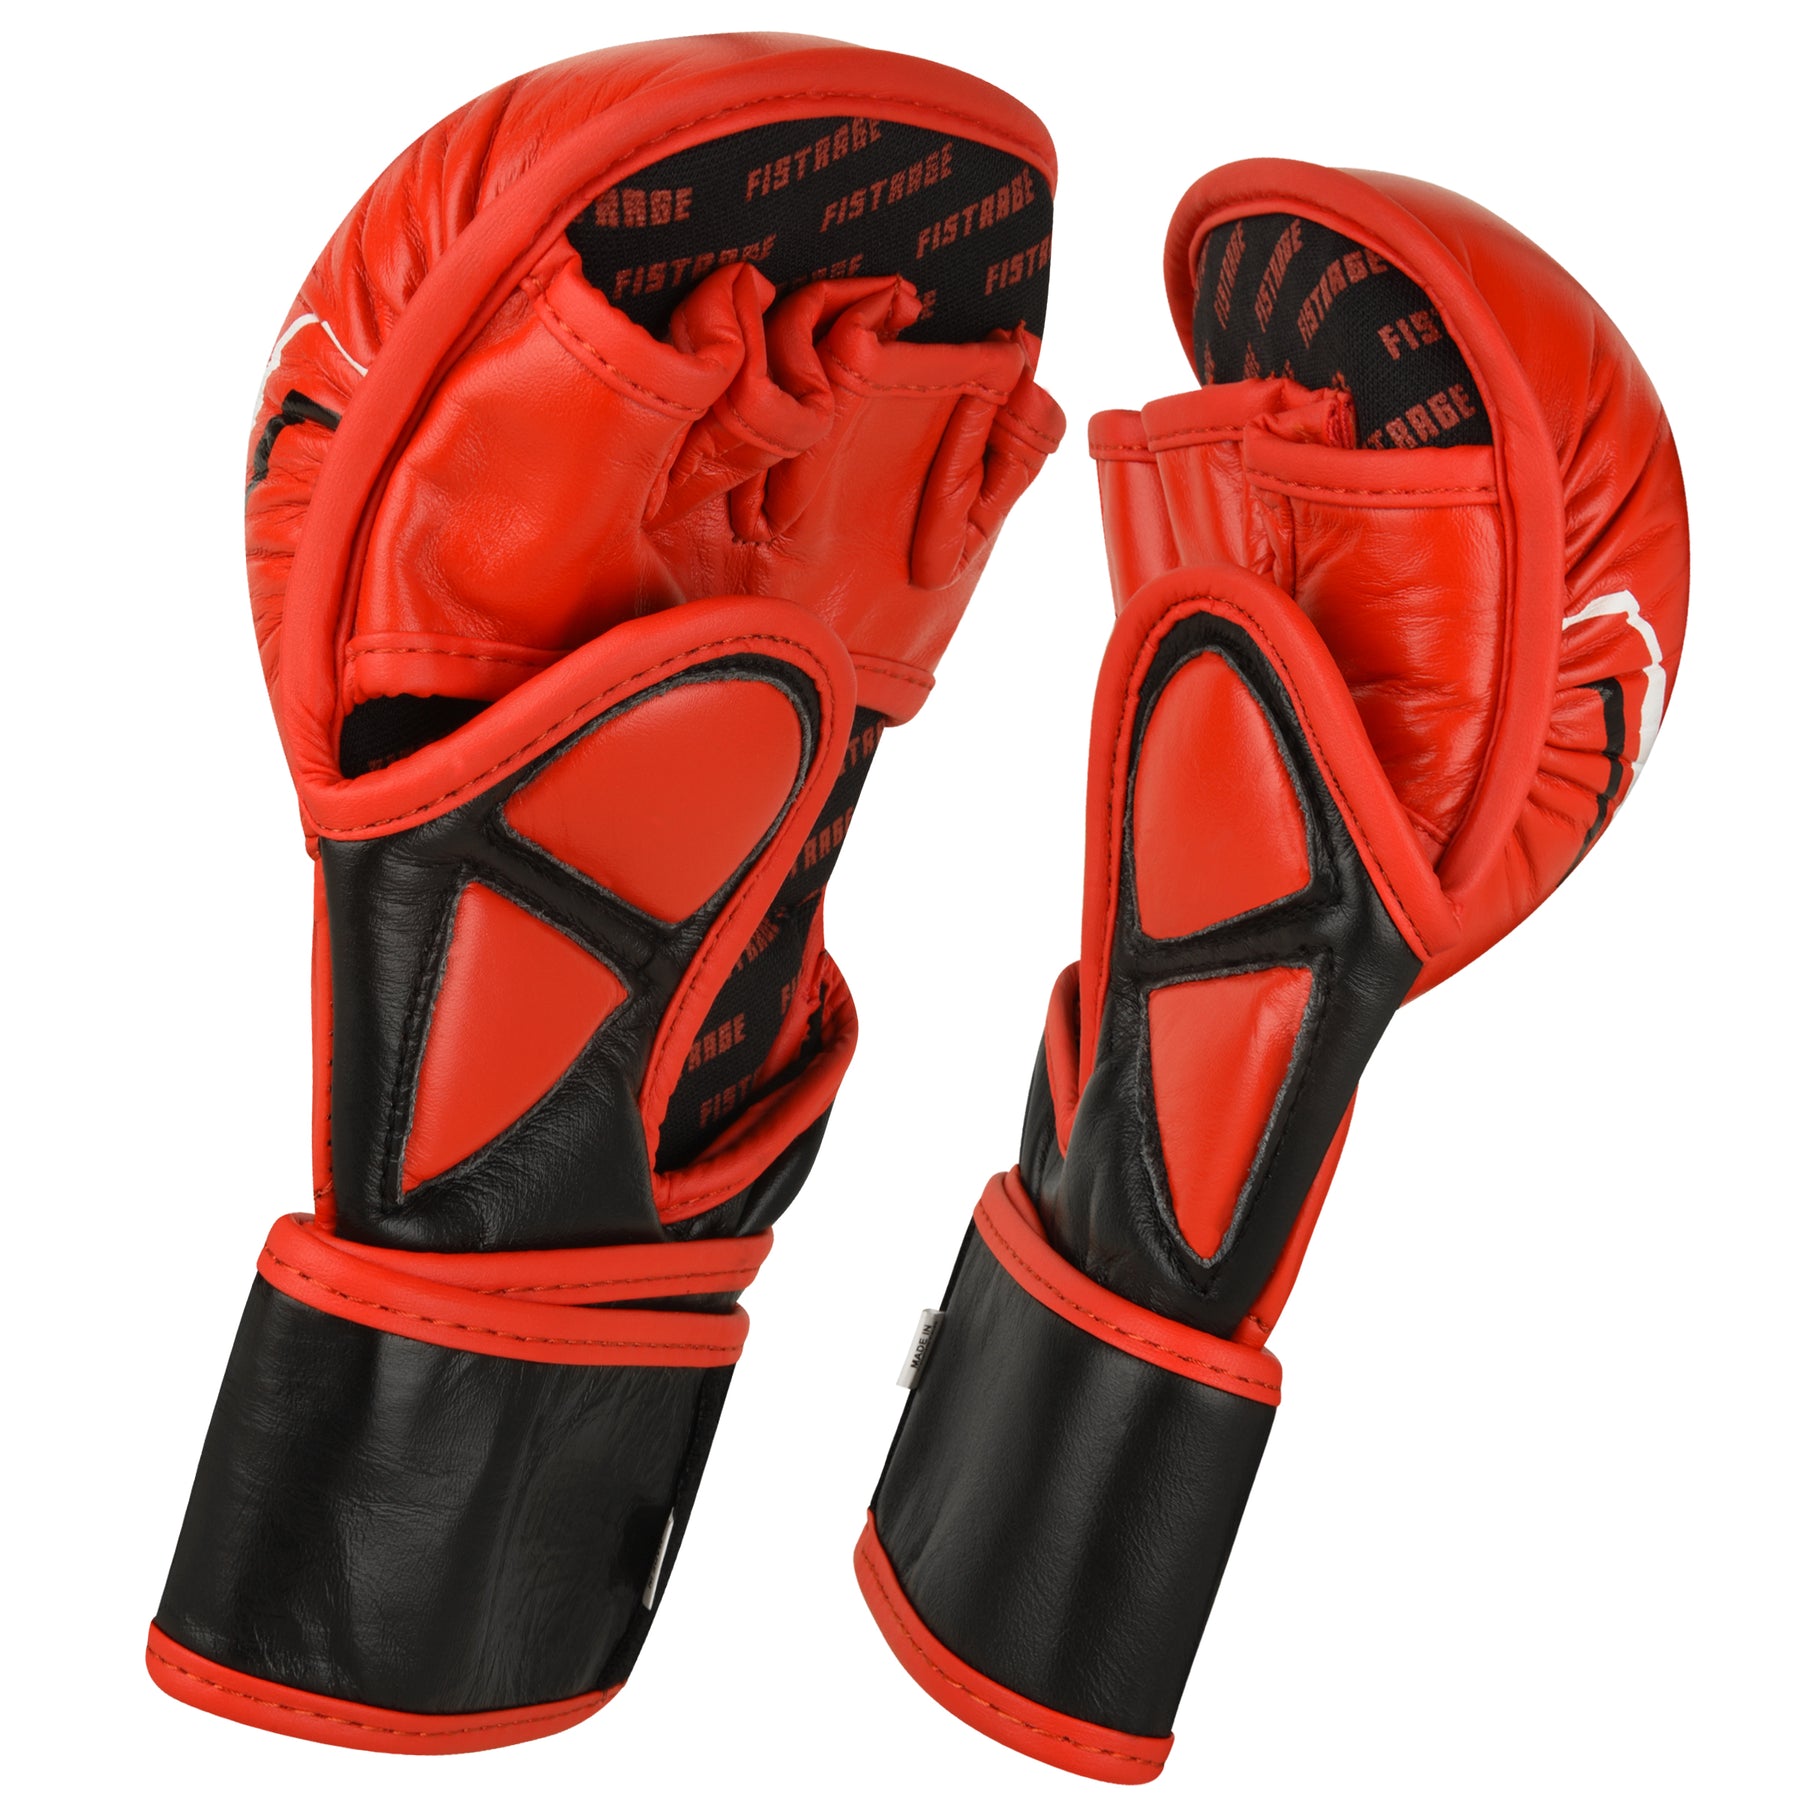 KNIGHT MMA SHOOTER MITT Gloves - Red/Black